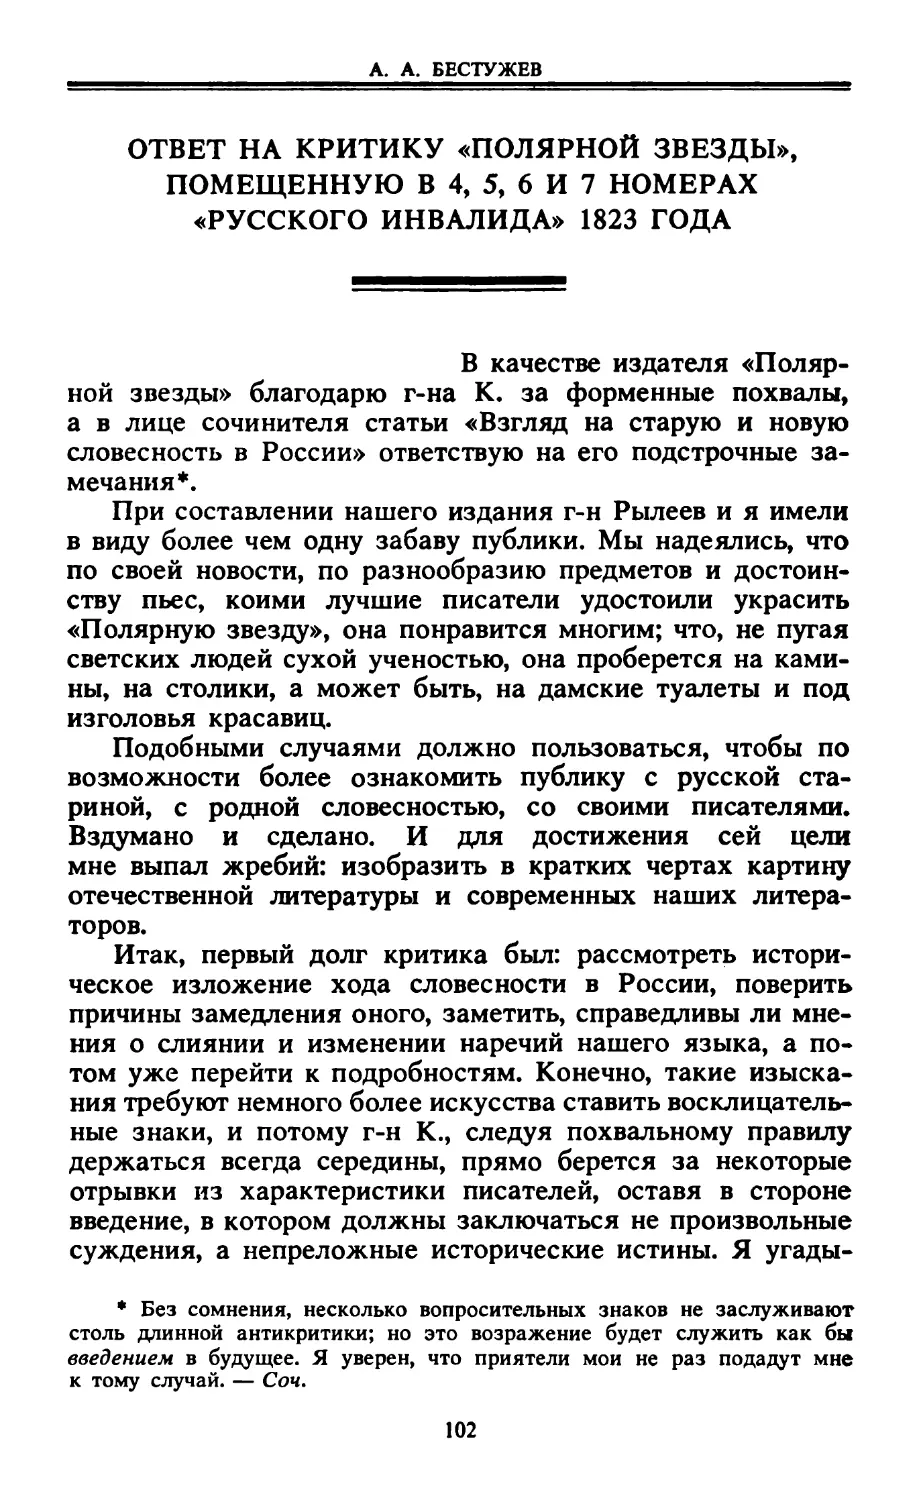 Ответ на критику «Полярной звезды», помещенную в 4, 5, 6 и 7 номерах «Русского инвалида» 1823 года